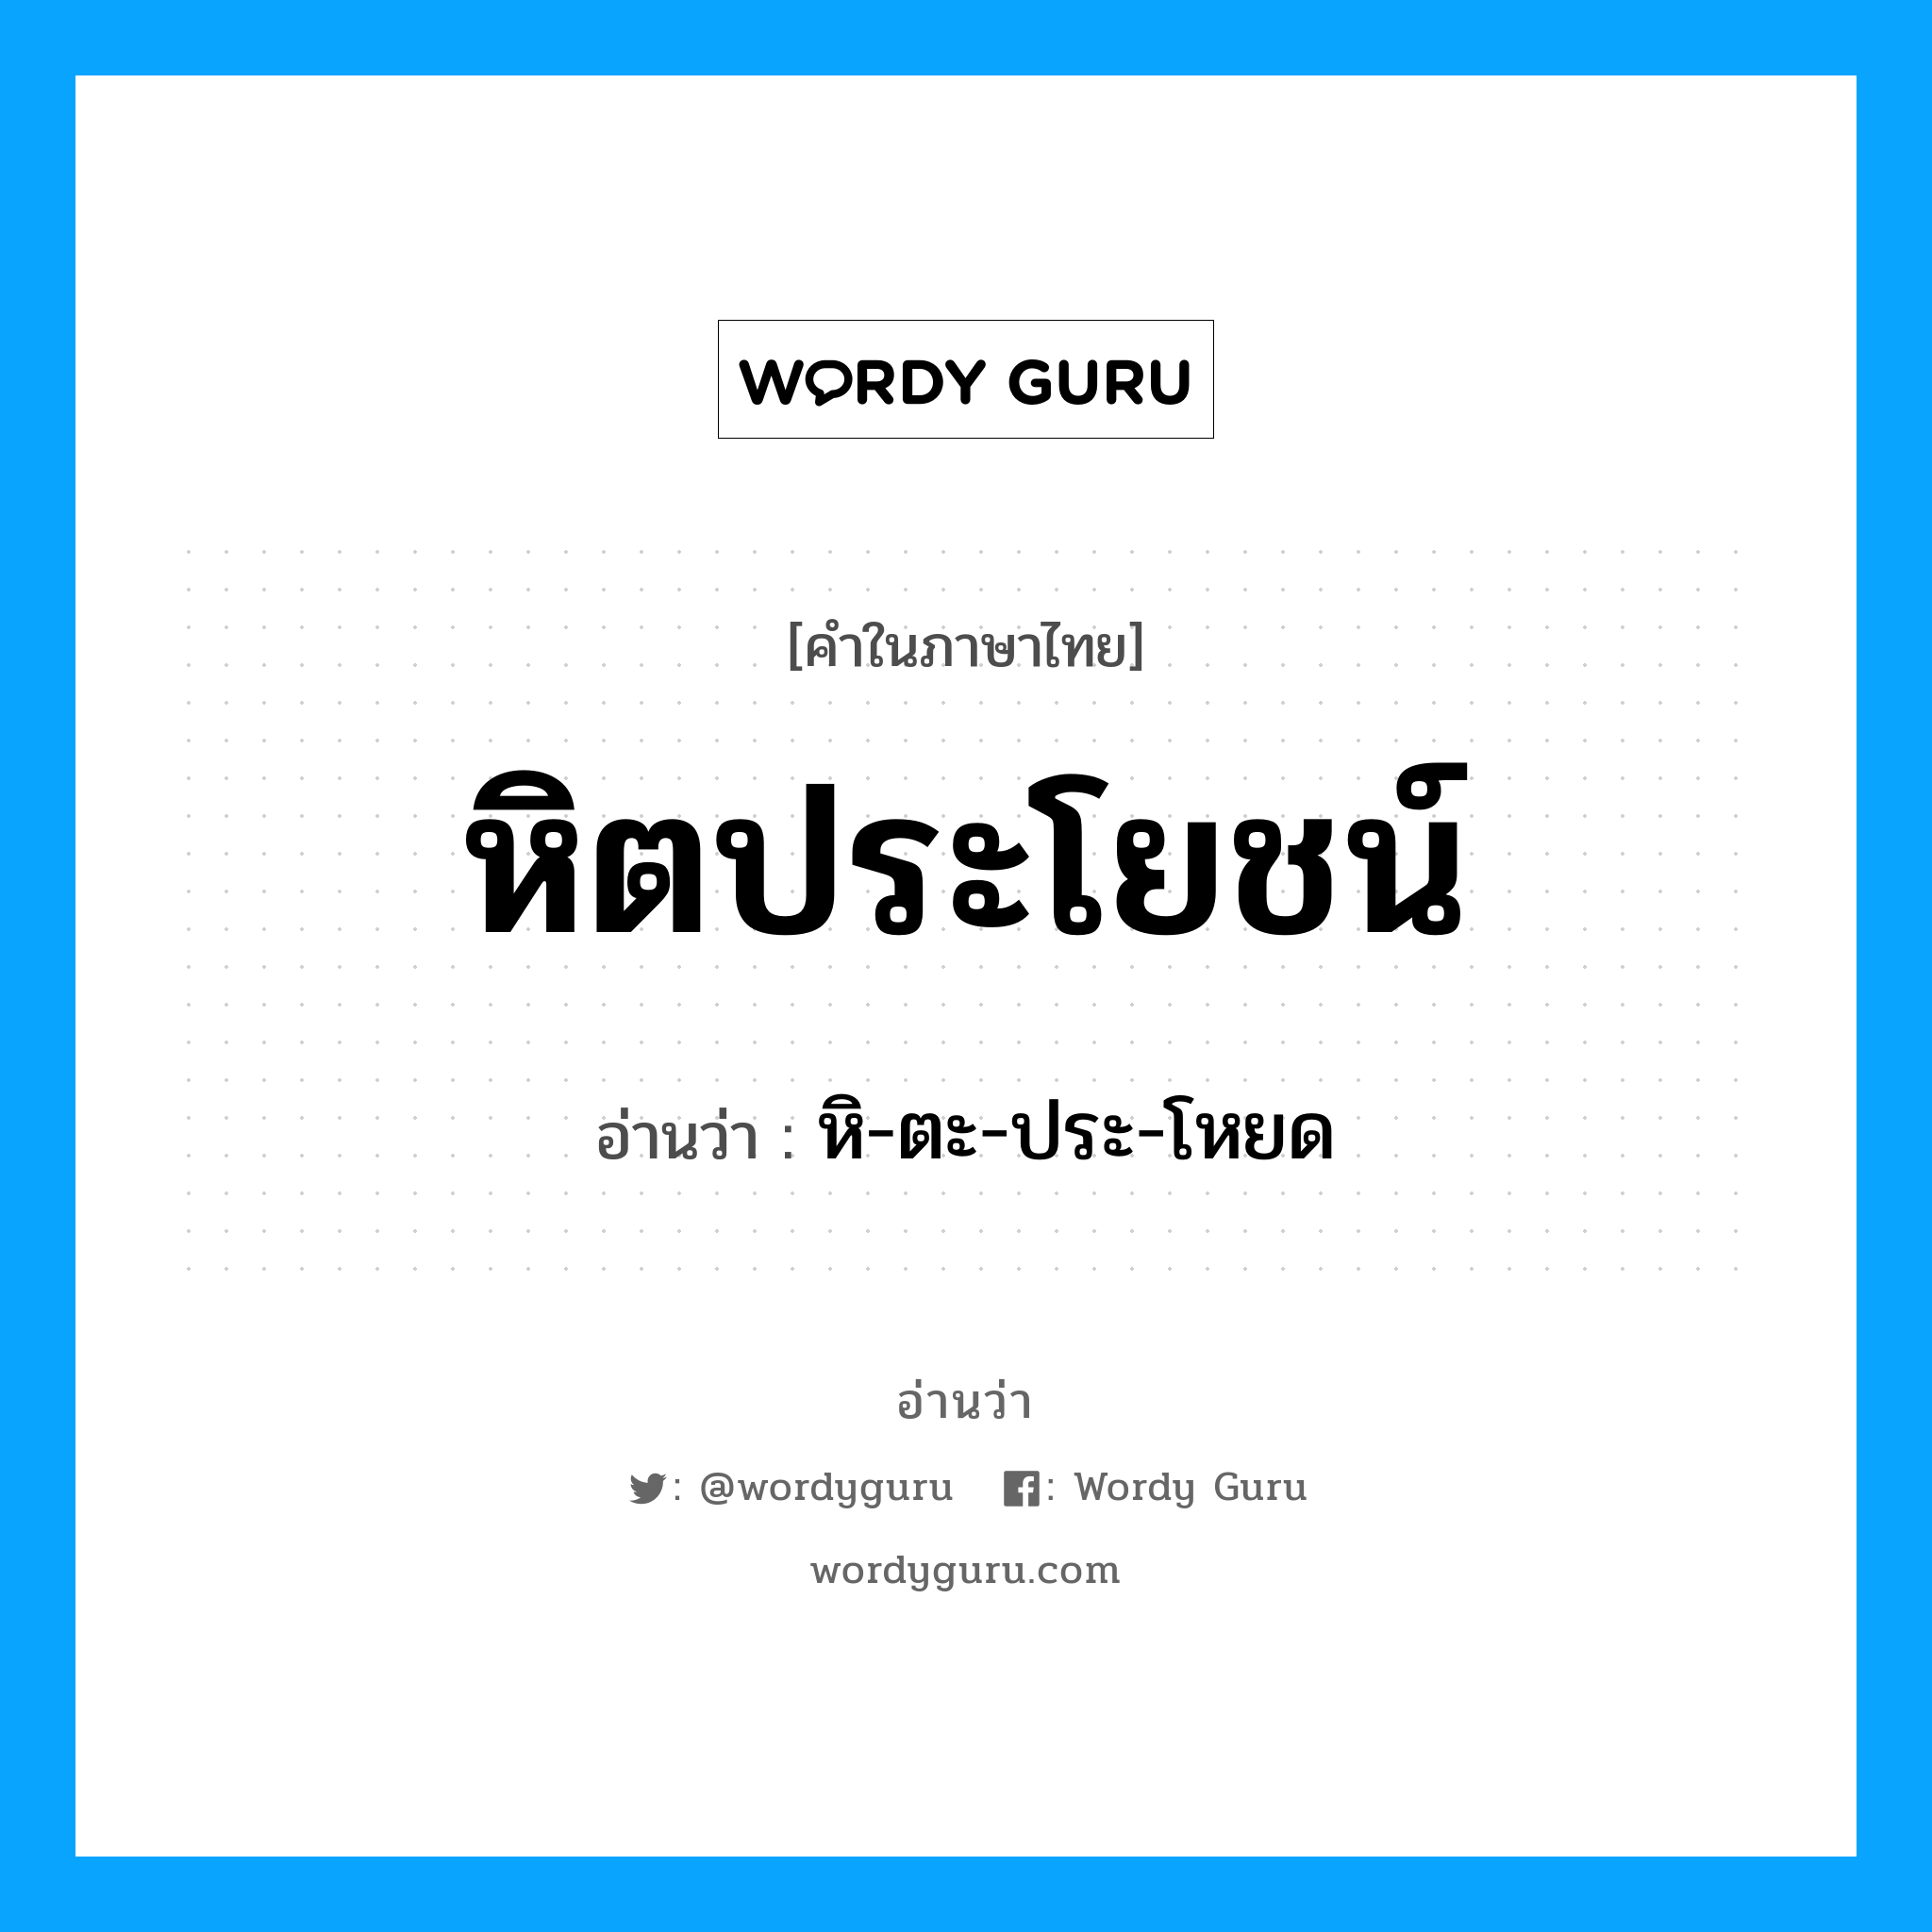 หิ-ตะ-ประ-โหยด เป็นคำอ่านของคำไหน?, คำในภาษาไทย หิ-ตะ-ประ-โหยด อ่านว่า หิตประโยชน์